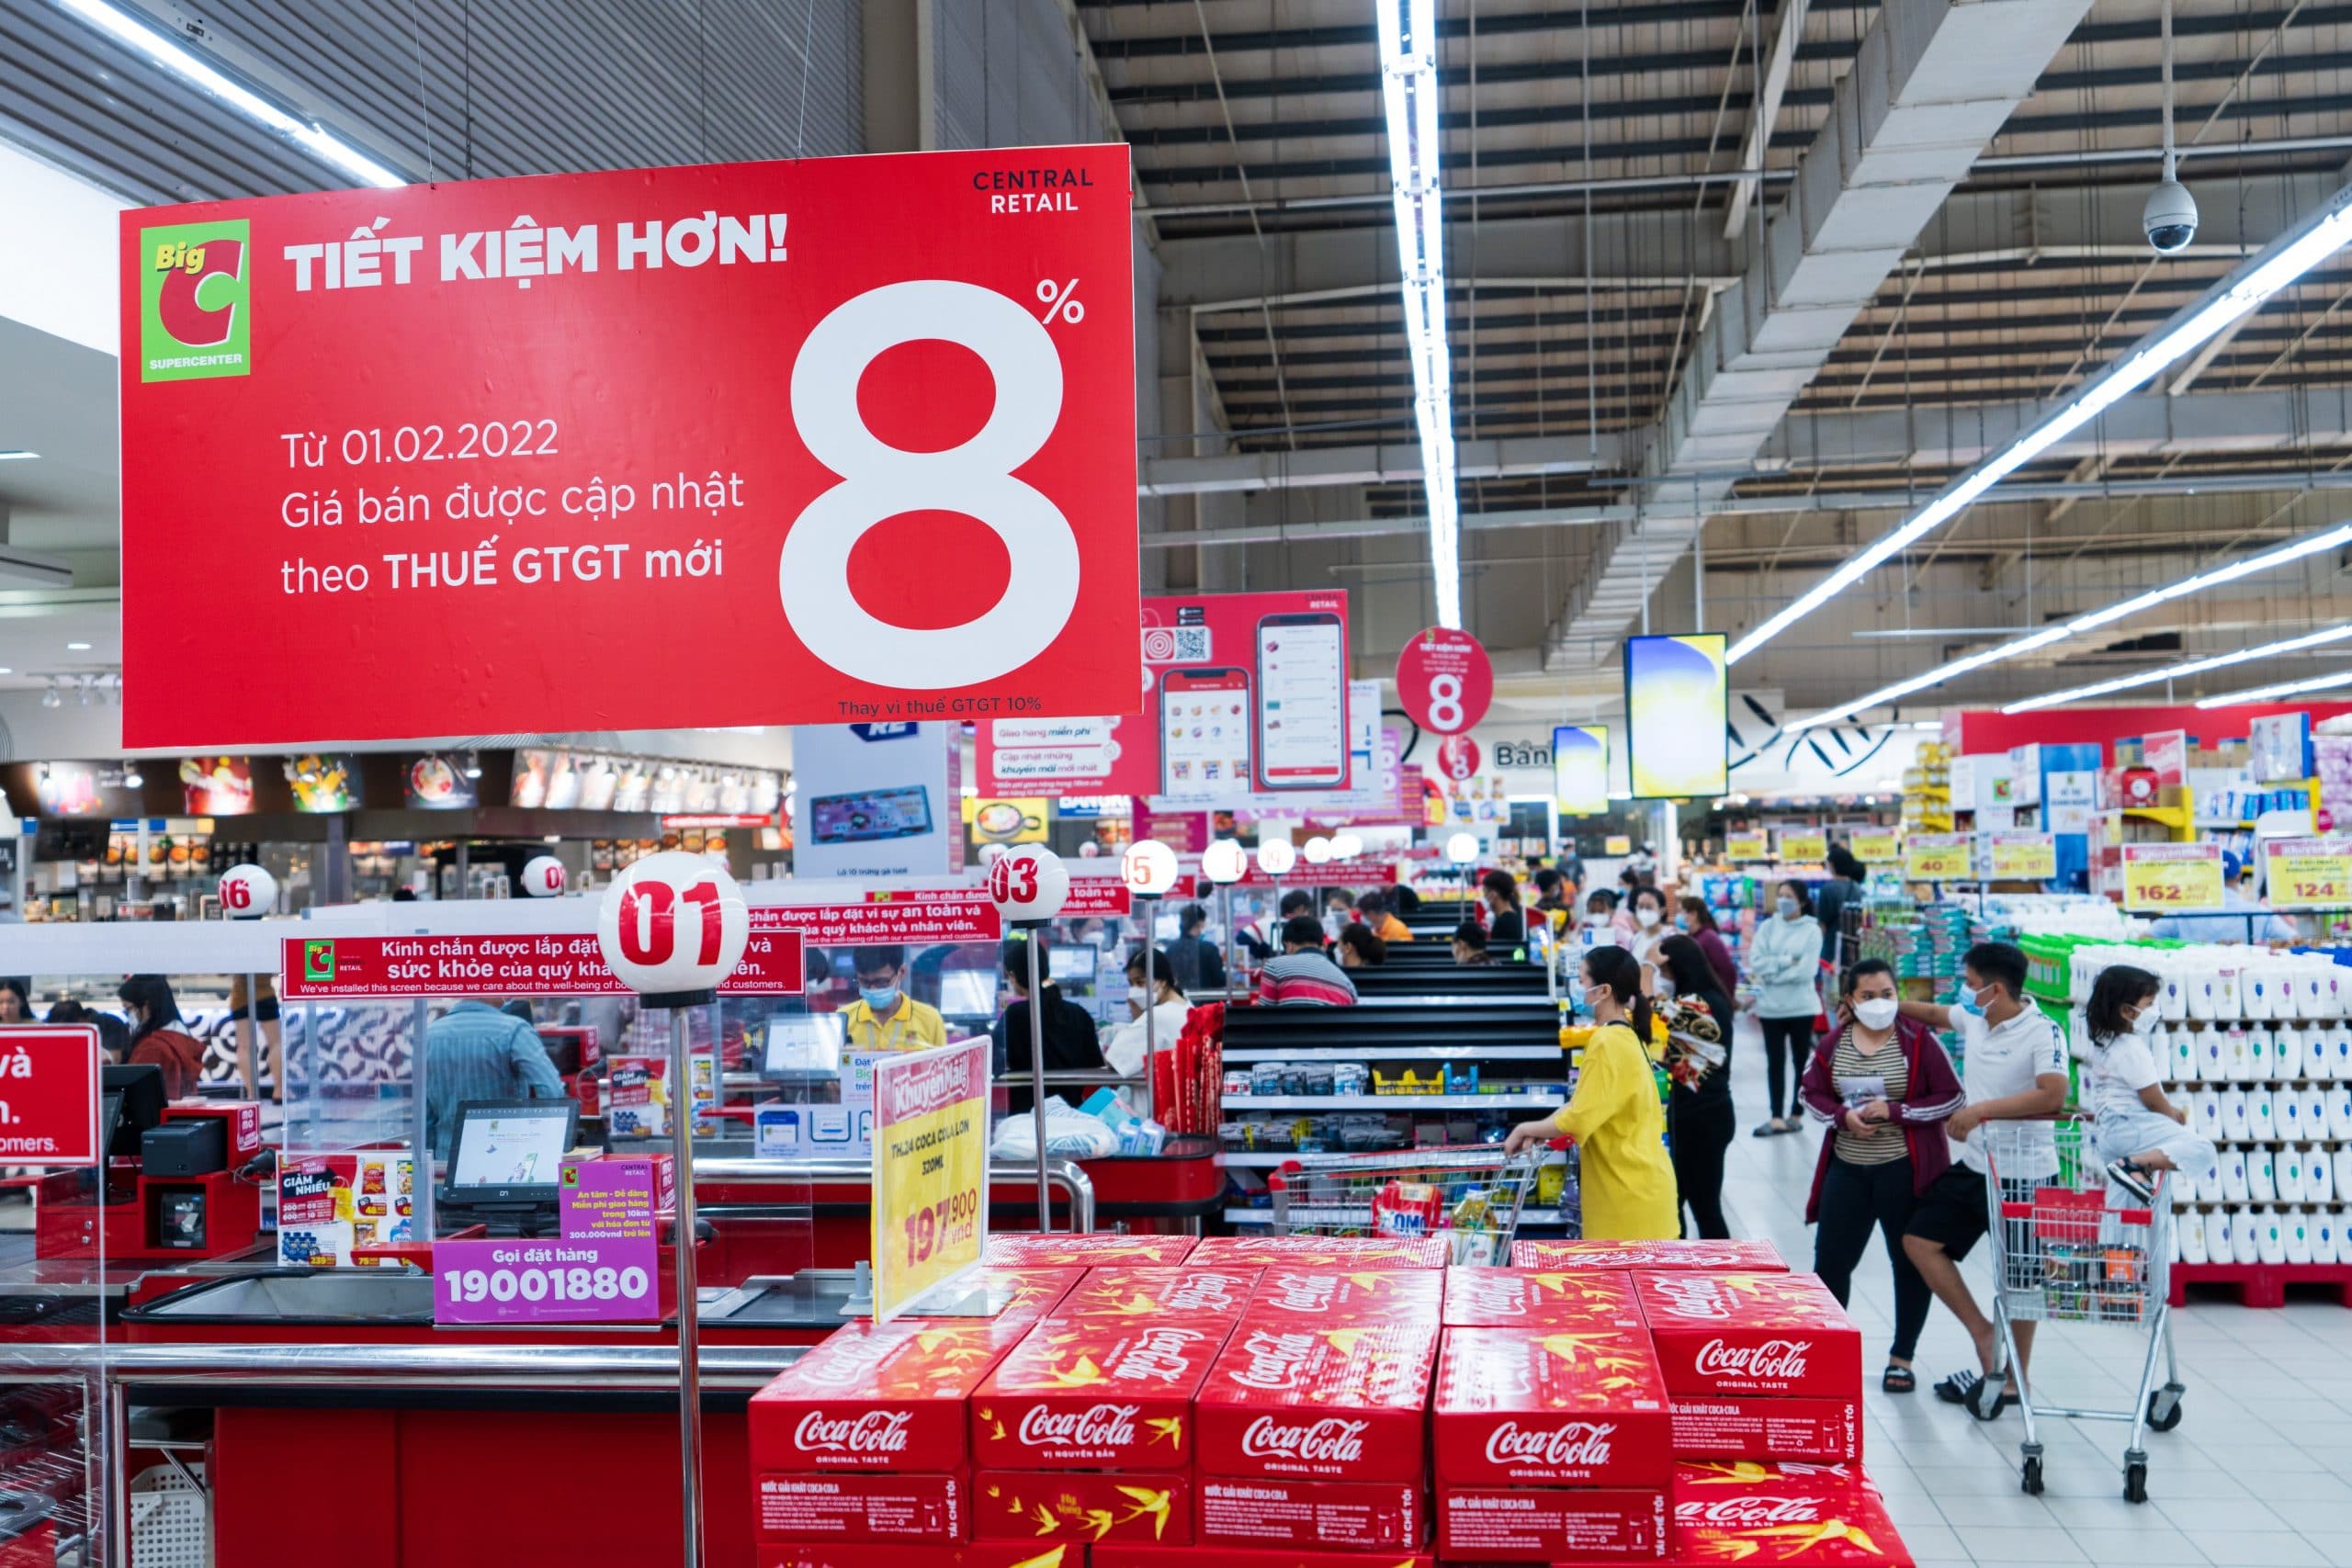 Hàng chục ngàn sản phẩm giảm thuế VAT xuống còn 8% tại các chuỗi bán lẻ của Central Retail – giúp người tiêu dùng mua sắm tiết kiệm ngay đầu năm mới